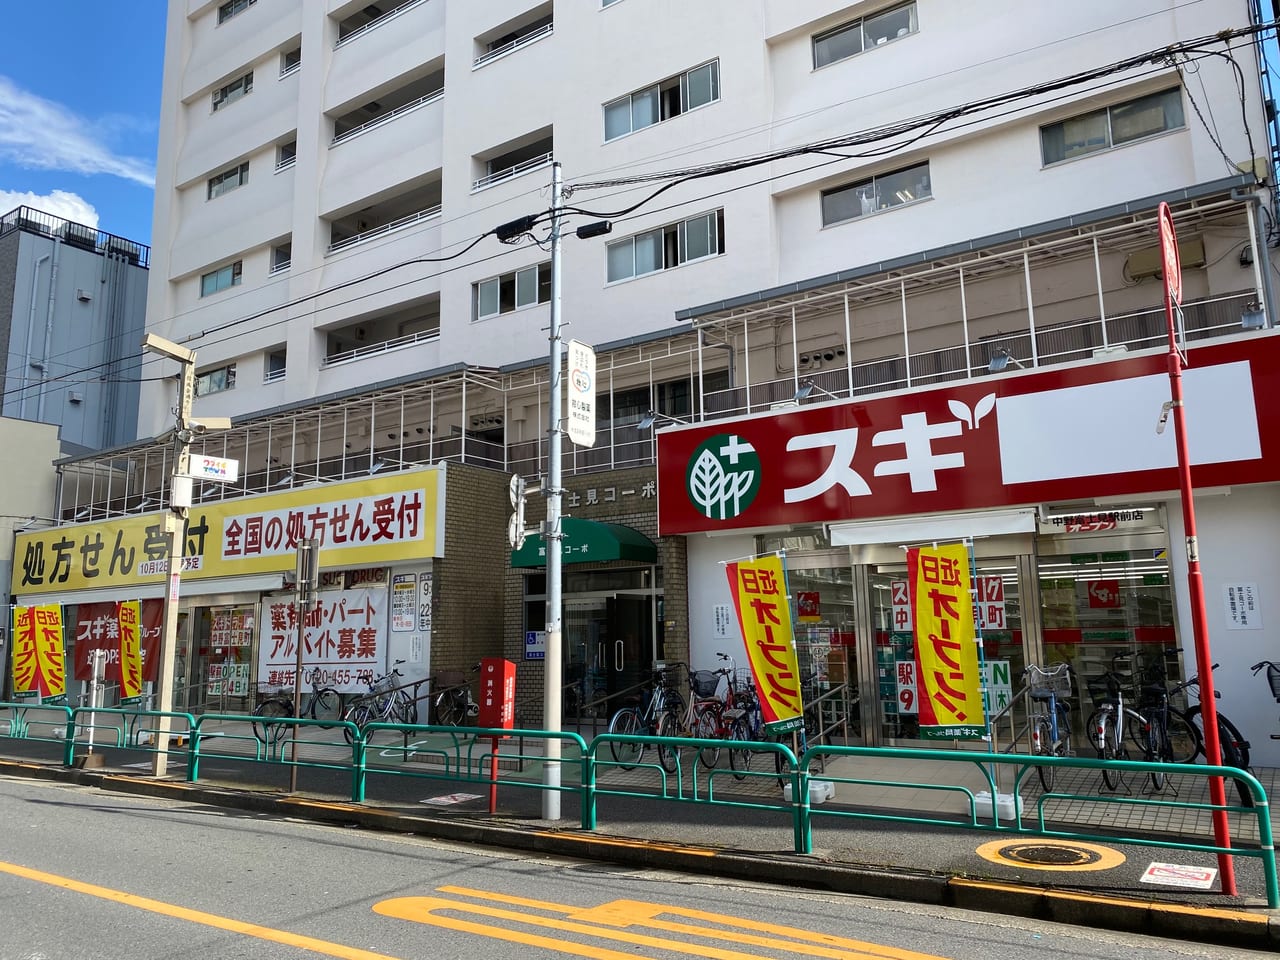 中野区 中野富士見町駅近くに新たにスギ薬局ができるようです 9月24日オープン予定 号外net 中野区